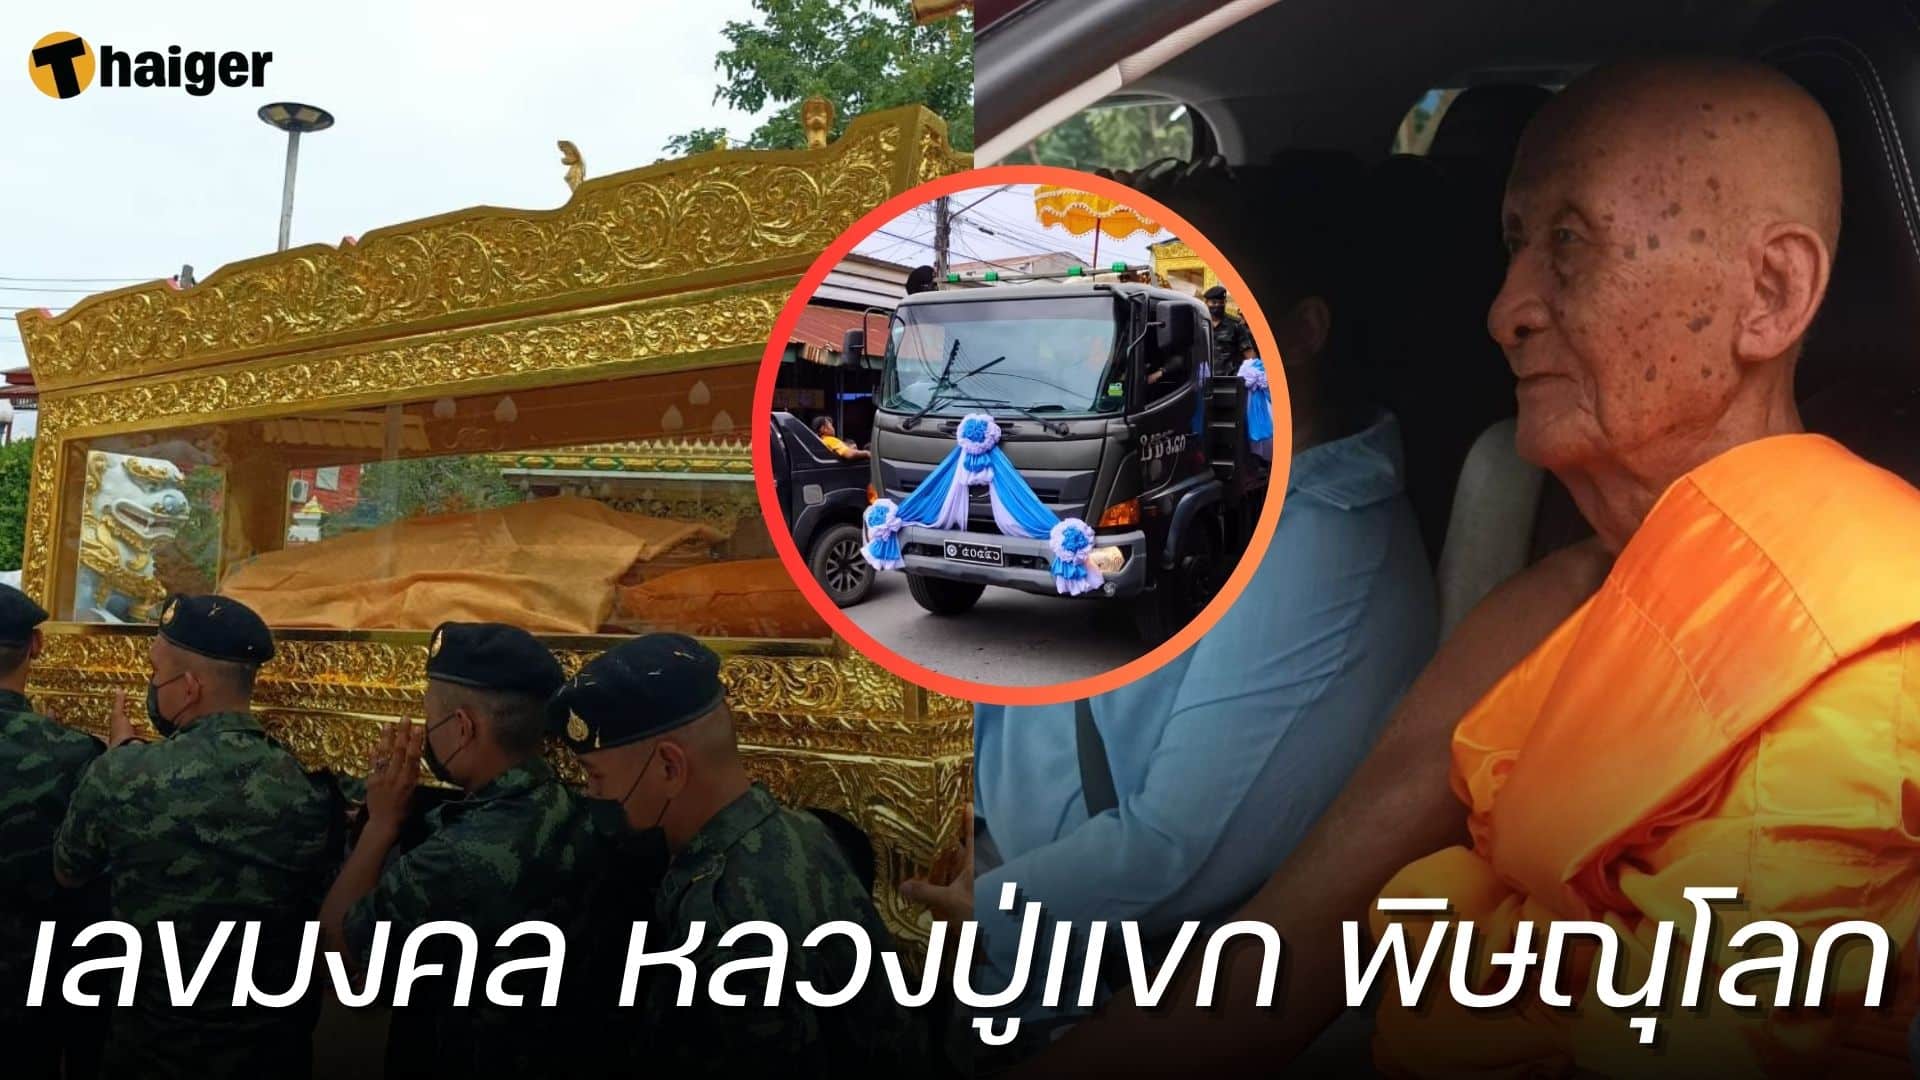 เลขมงคล อัญเชิญสรีระสังขาร หลวงปู่แขก ส่องเลขอายุ-ทะเบียนรถ 1 10 66 | Thaiger ข่าวไทย